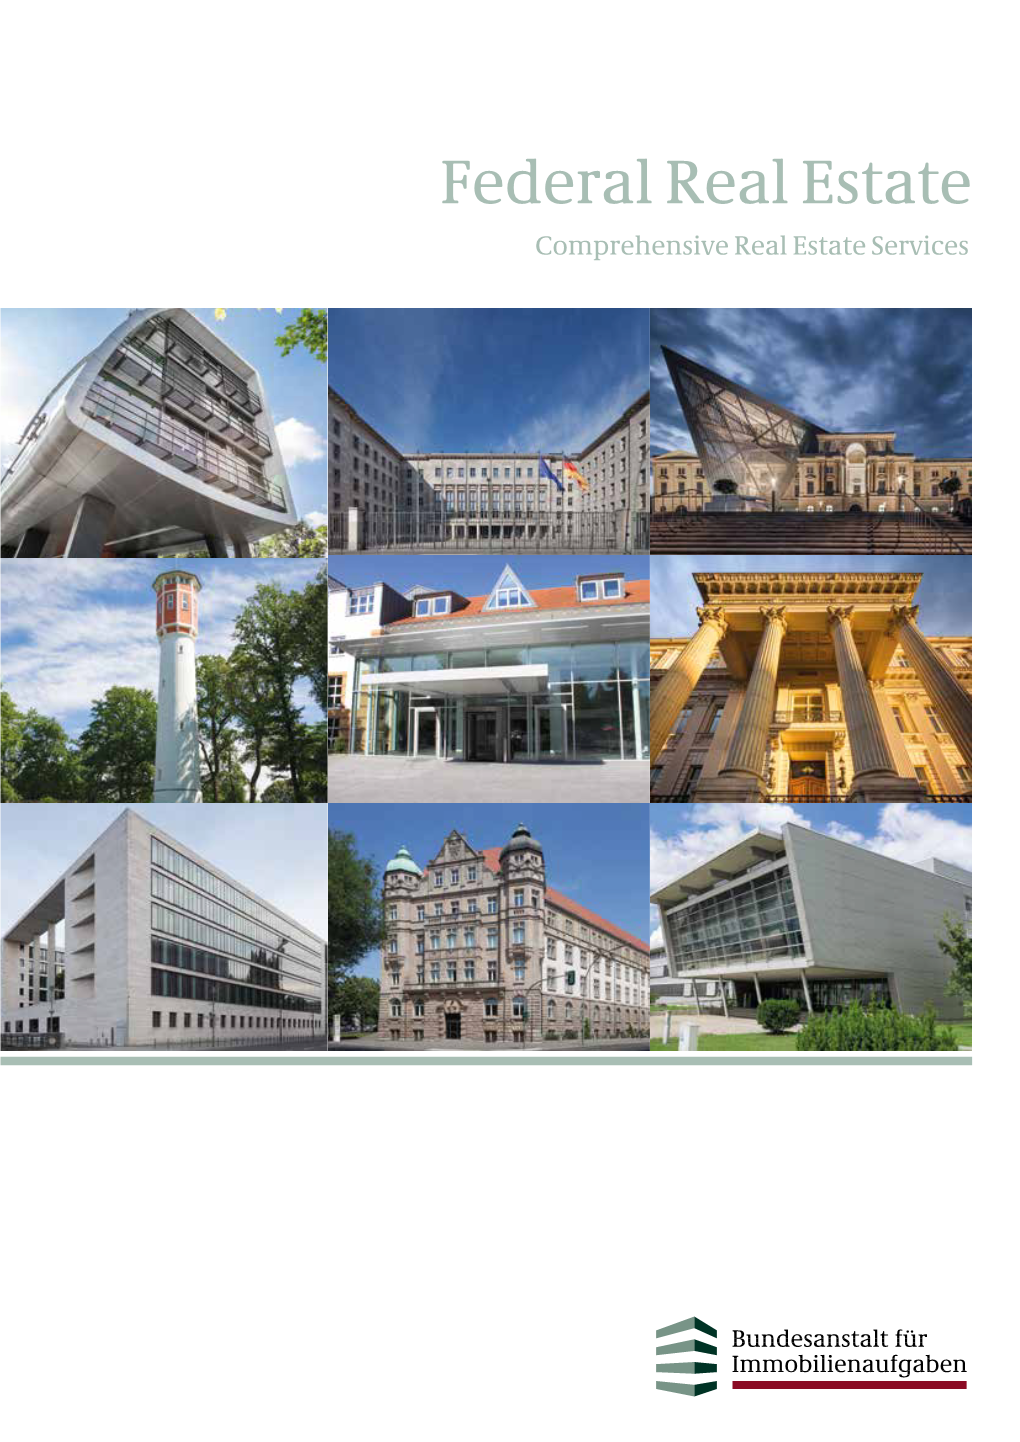 Federal Real Estate Comprehensive Real Estate Services Published by Bundesanstalt Für Immobilienaufgaben Ellerstrasse 56 53119 Bonn